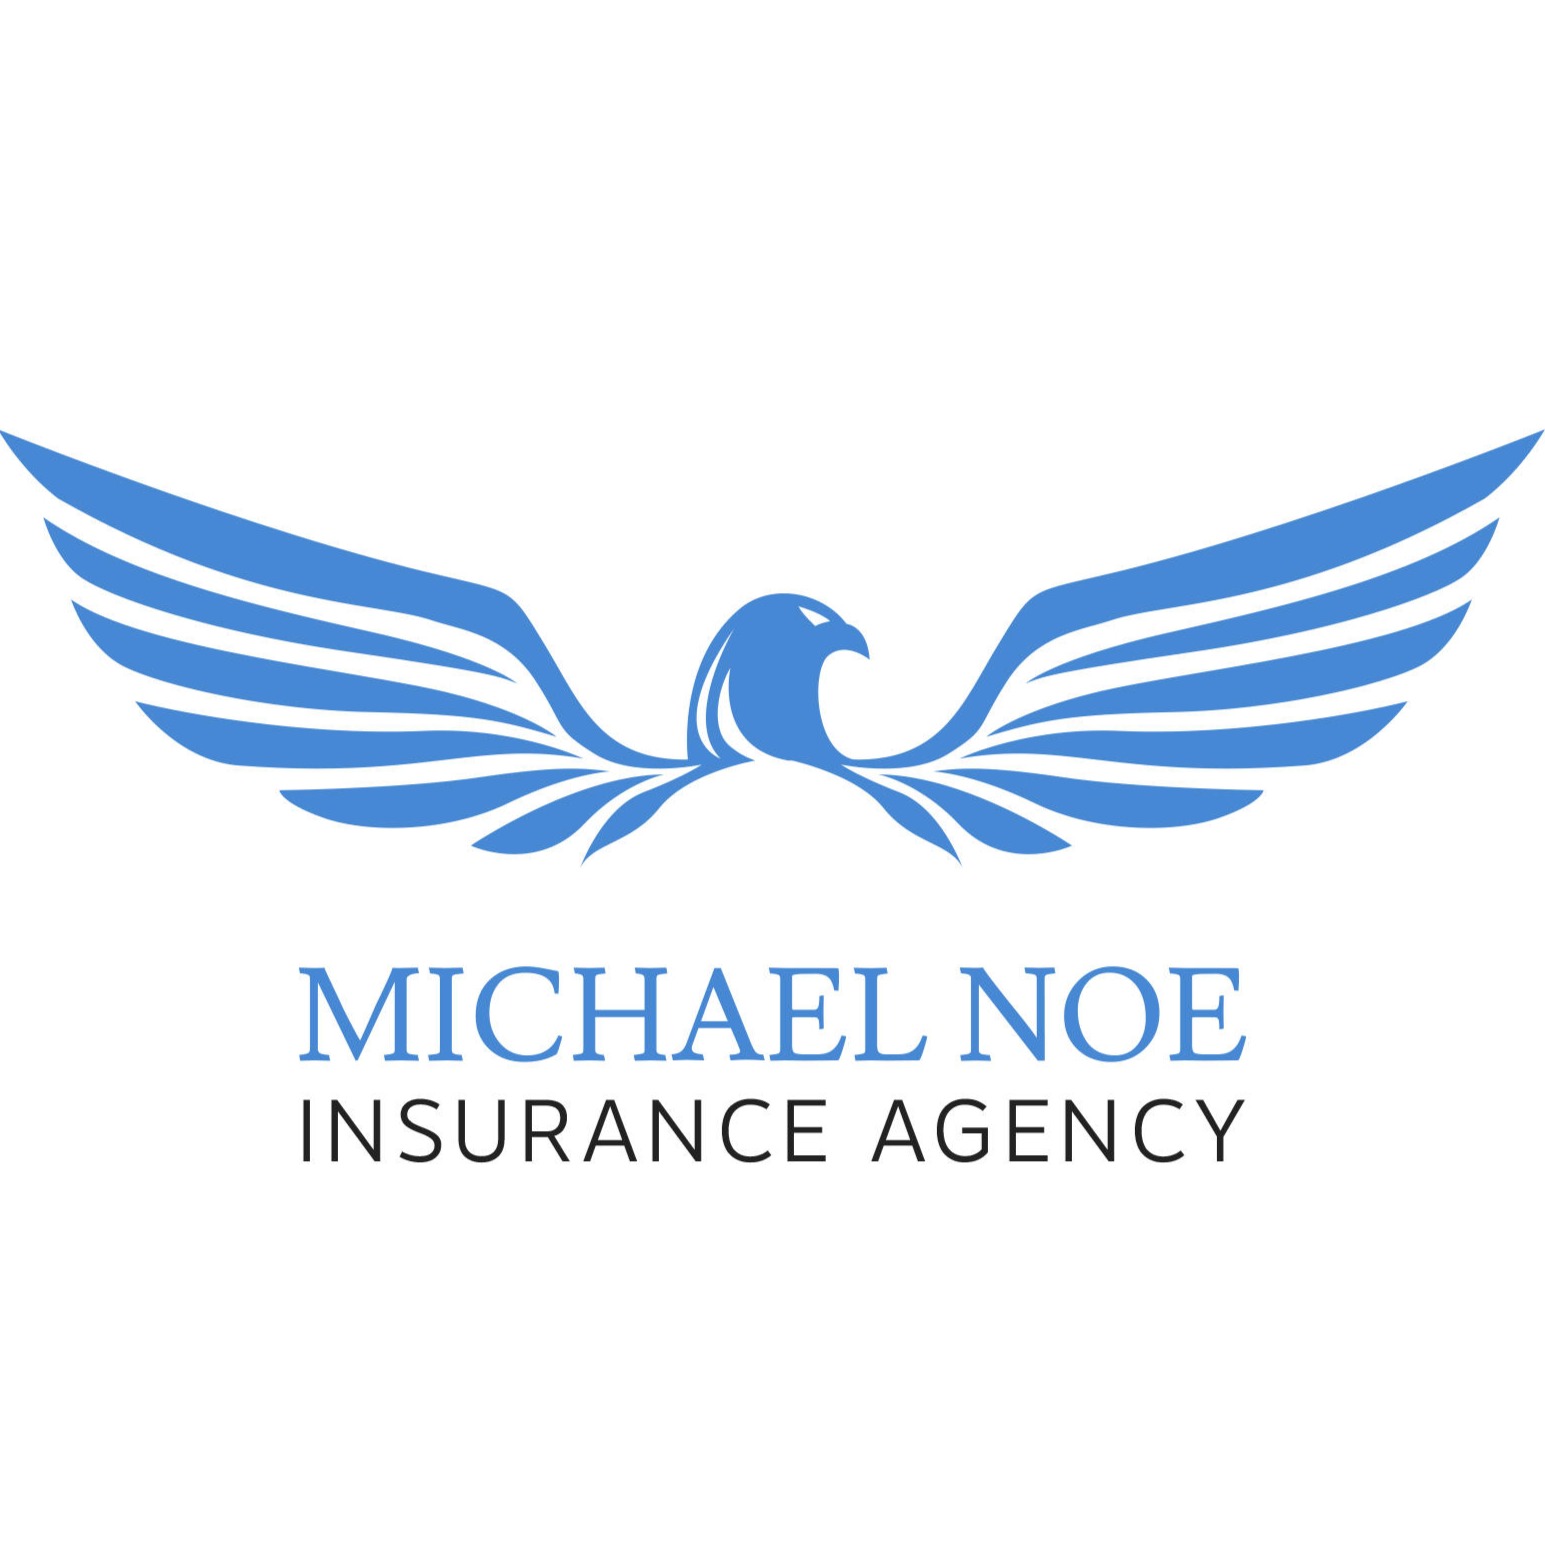 Michael Noe, Insurance Agent